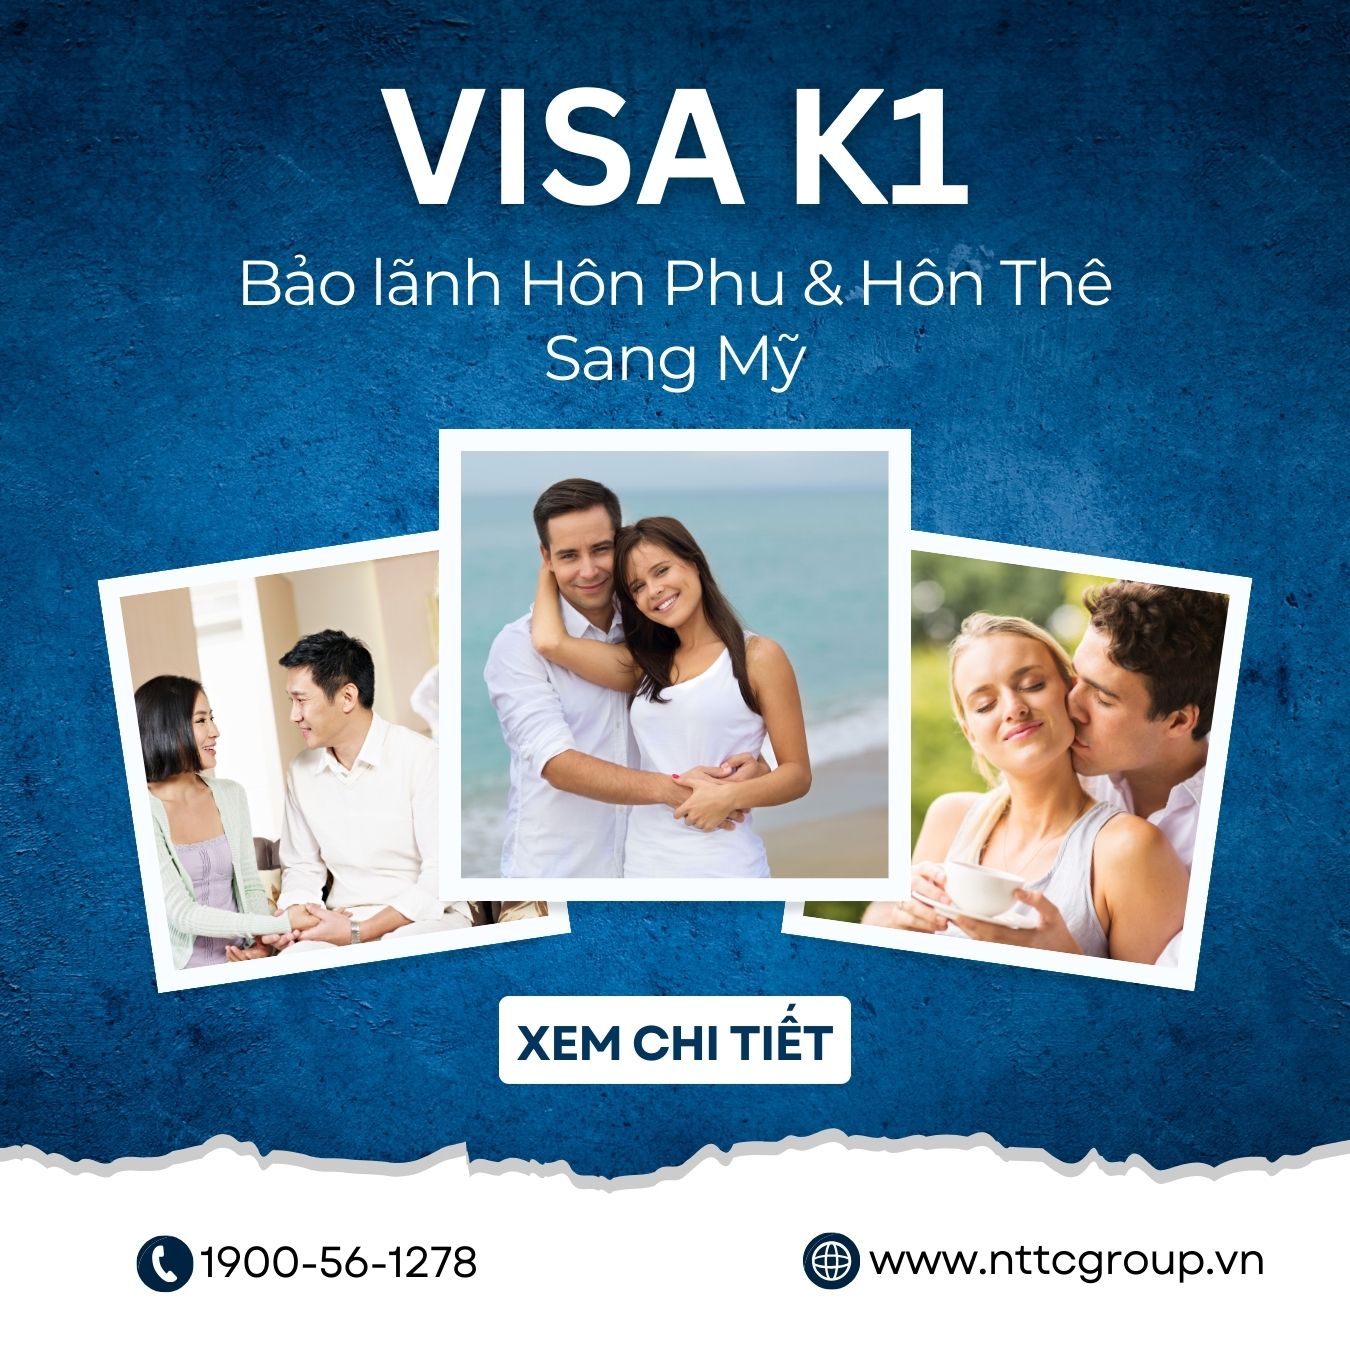 Visa K1 (bảo lãnh hôn phu/hôn thê): Tìm hiểu chi tiết quyền lợi, điều kiện tham gia và các giấy tờ cần chuẩn bị để xin visa